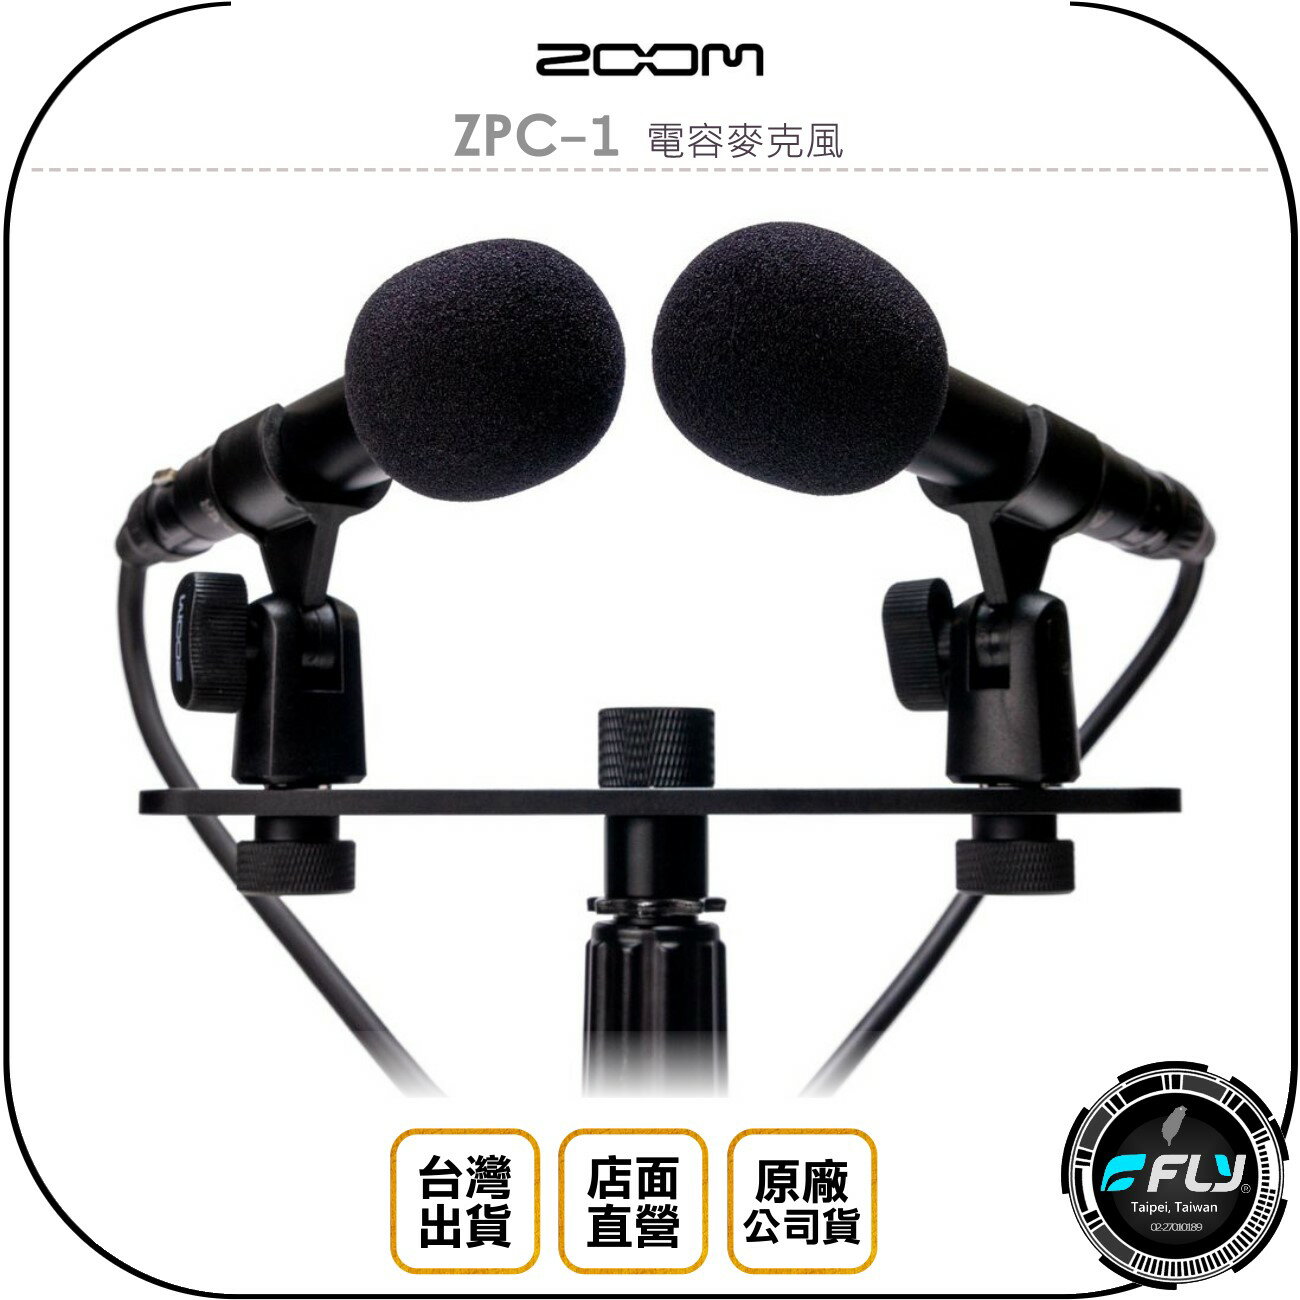 《飛翔無線3C》ZOOM ZPC-1 電容麥克風◉公司貨◉立體聲錄音◉高靈敏度◉金屬機身◉含 擋風防毛套 支架 0